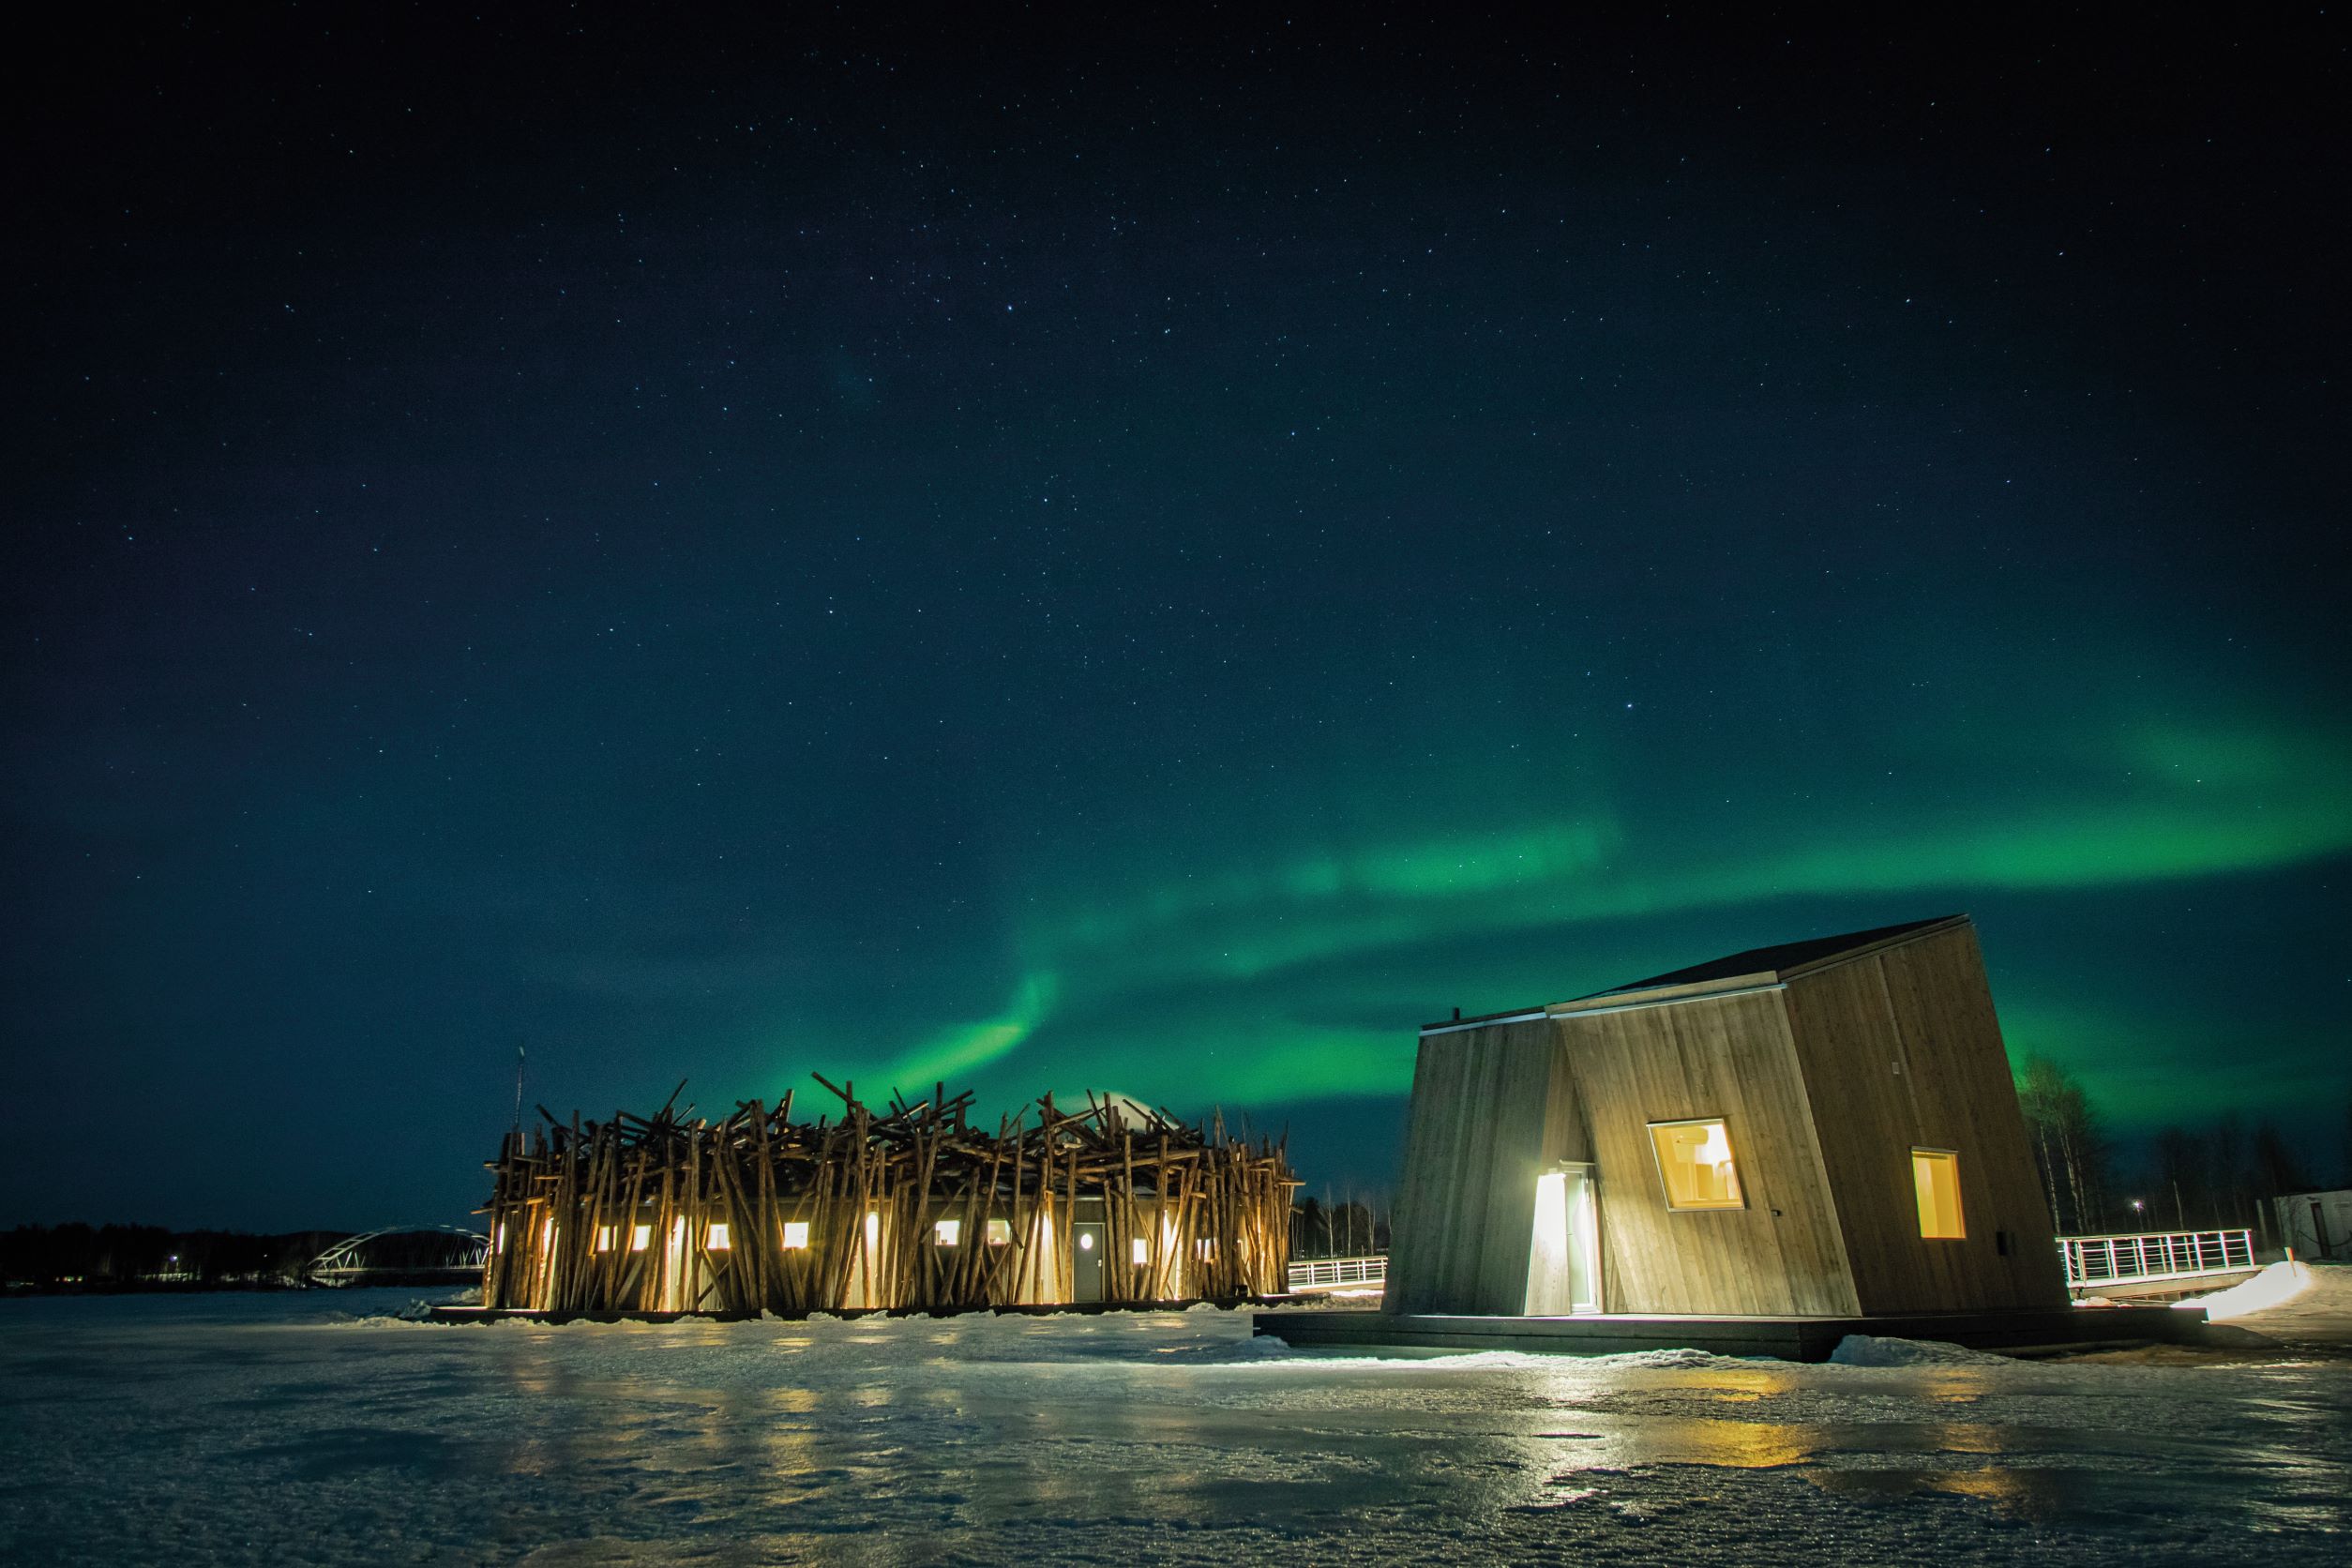 位於極光帶上的 Arctic Bath，在冬季天氣清朗時，便有機會欣賞到神秘又壯觀的綠光之舞。